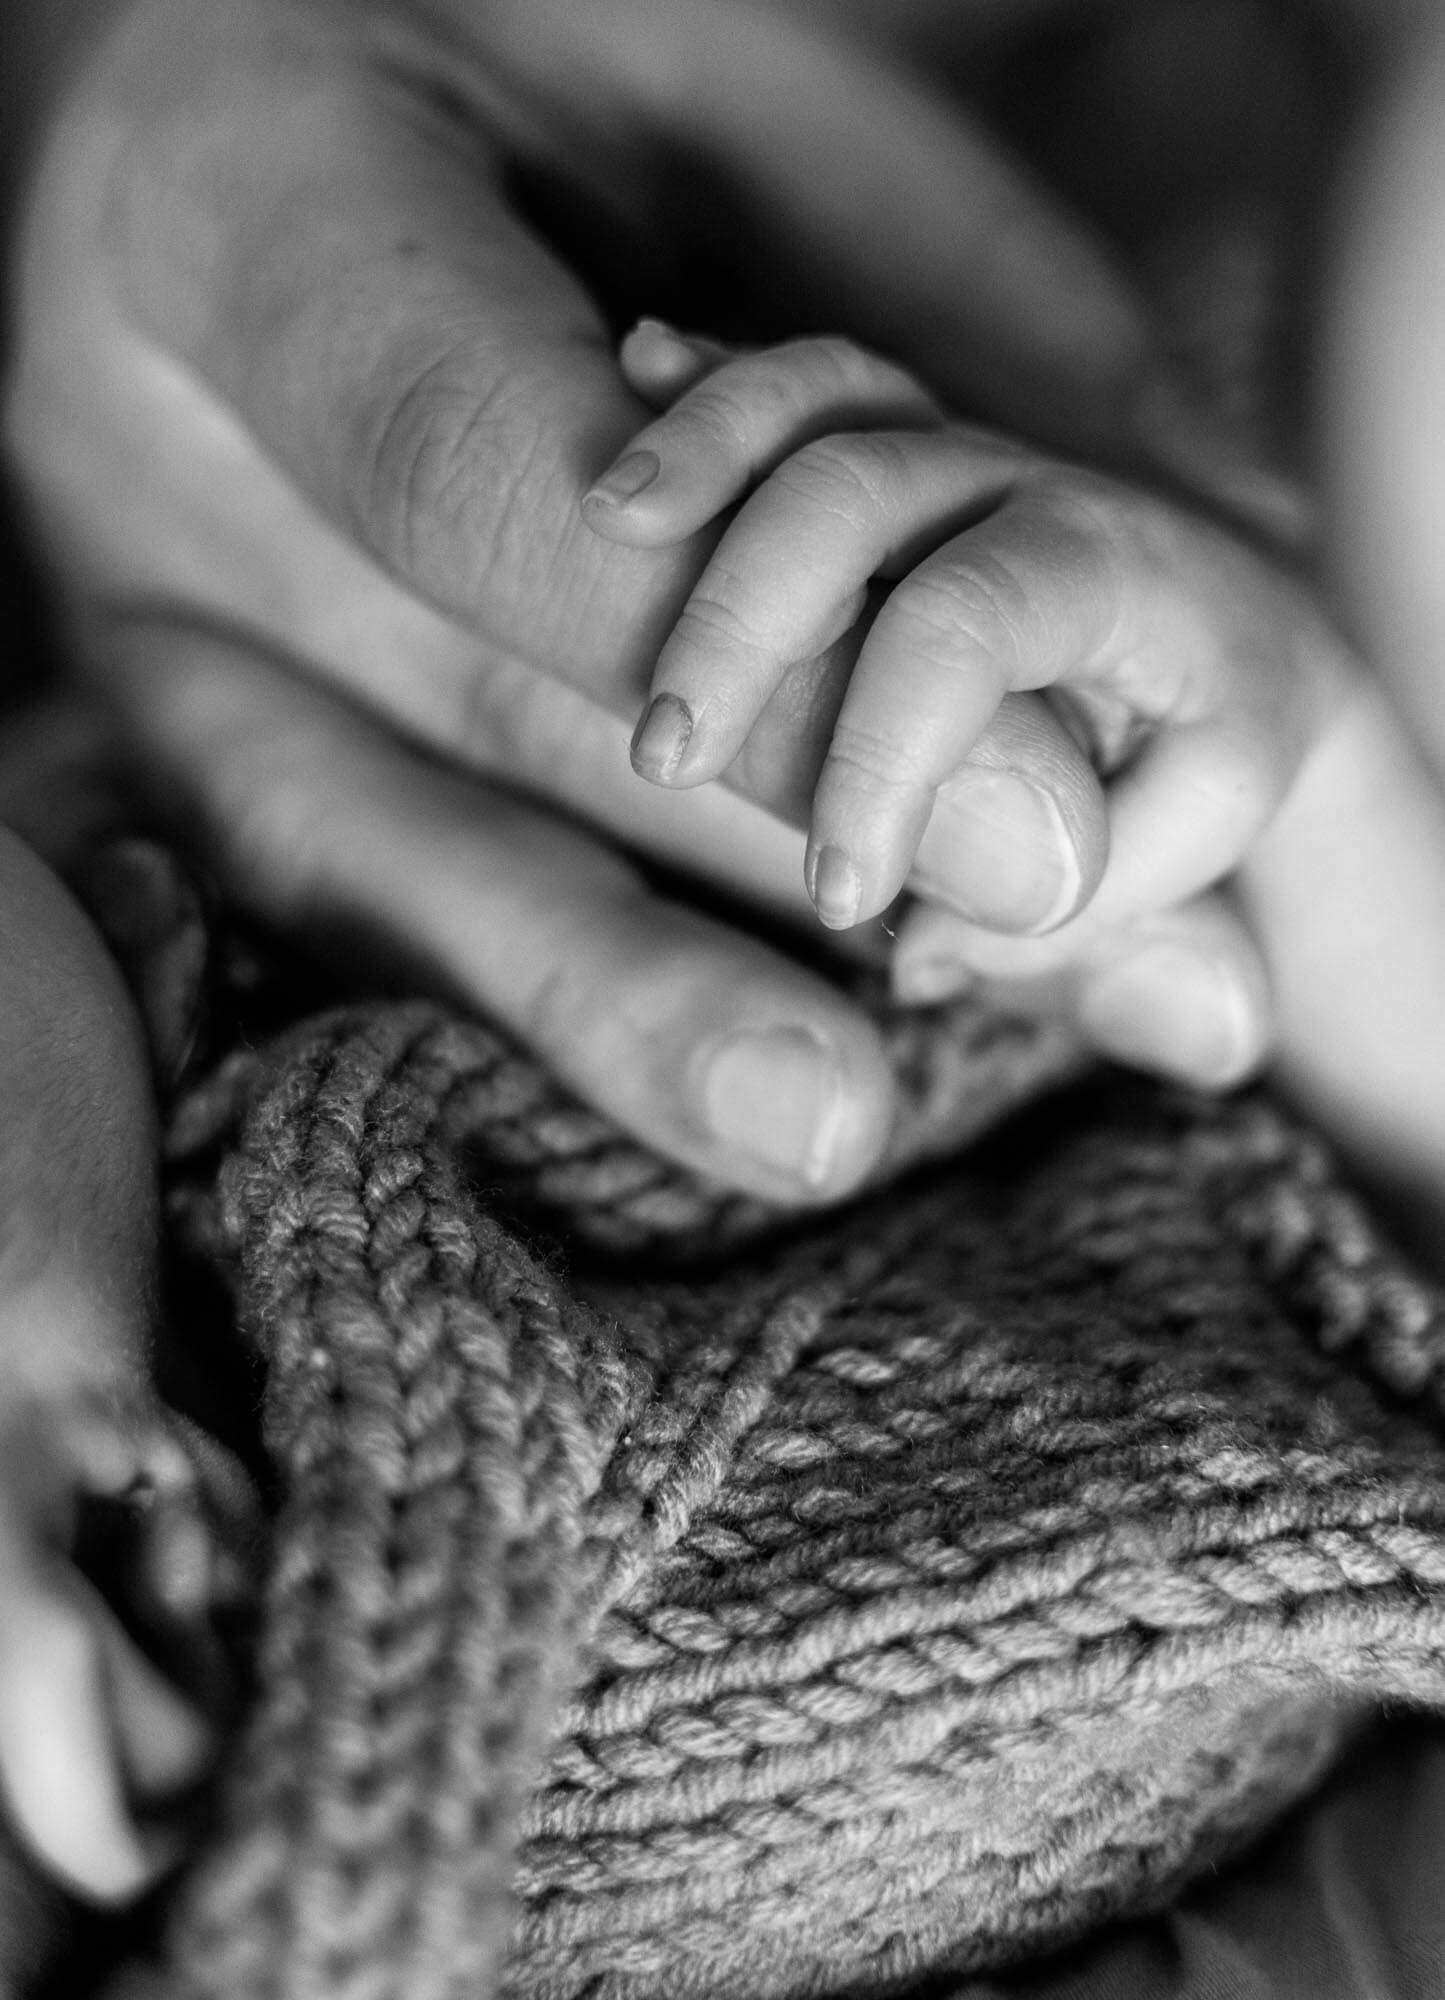 Detailaufnahme von Babyfingern - Baby greift nach den Fingern seiner Mama - Bild in schwarz weiß